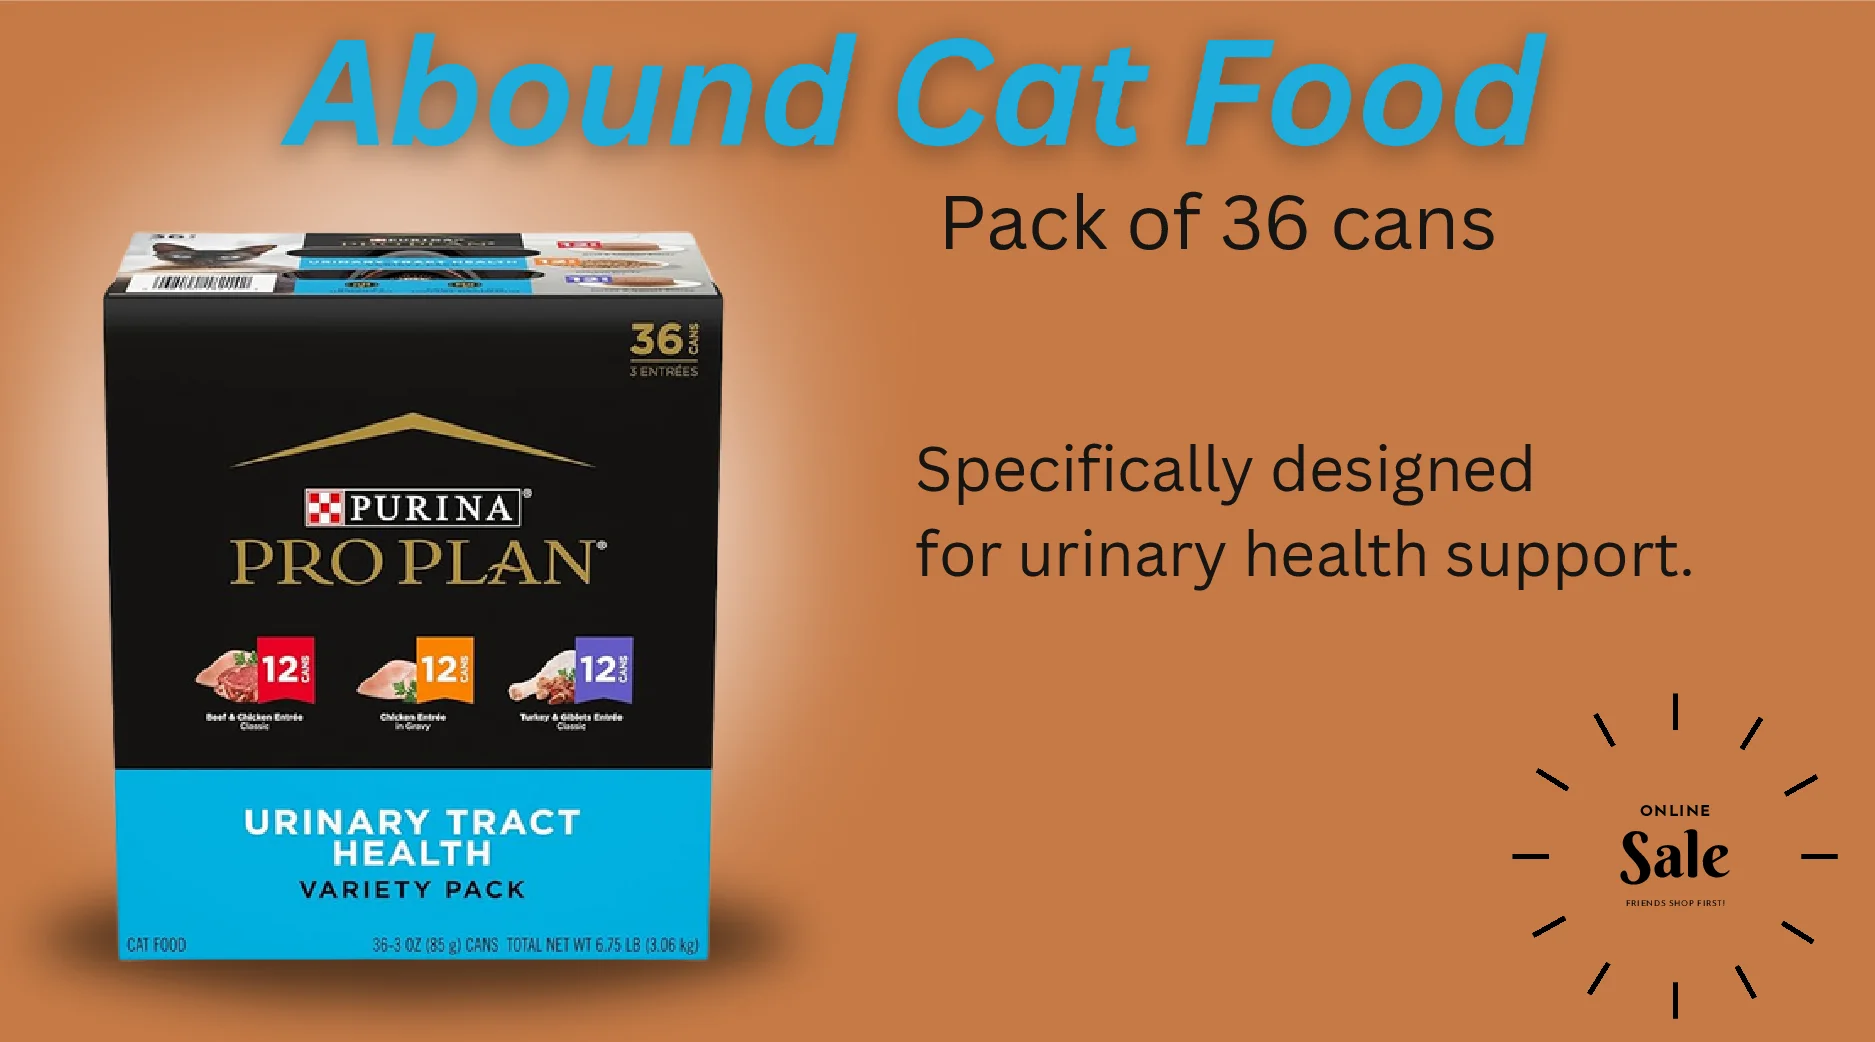 Abound Cat Food